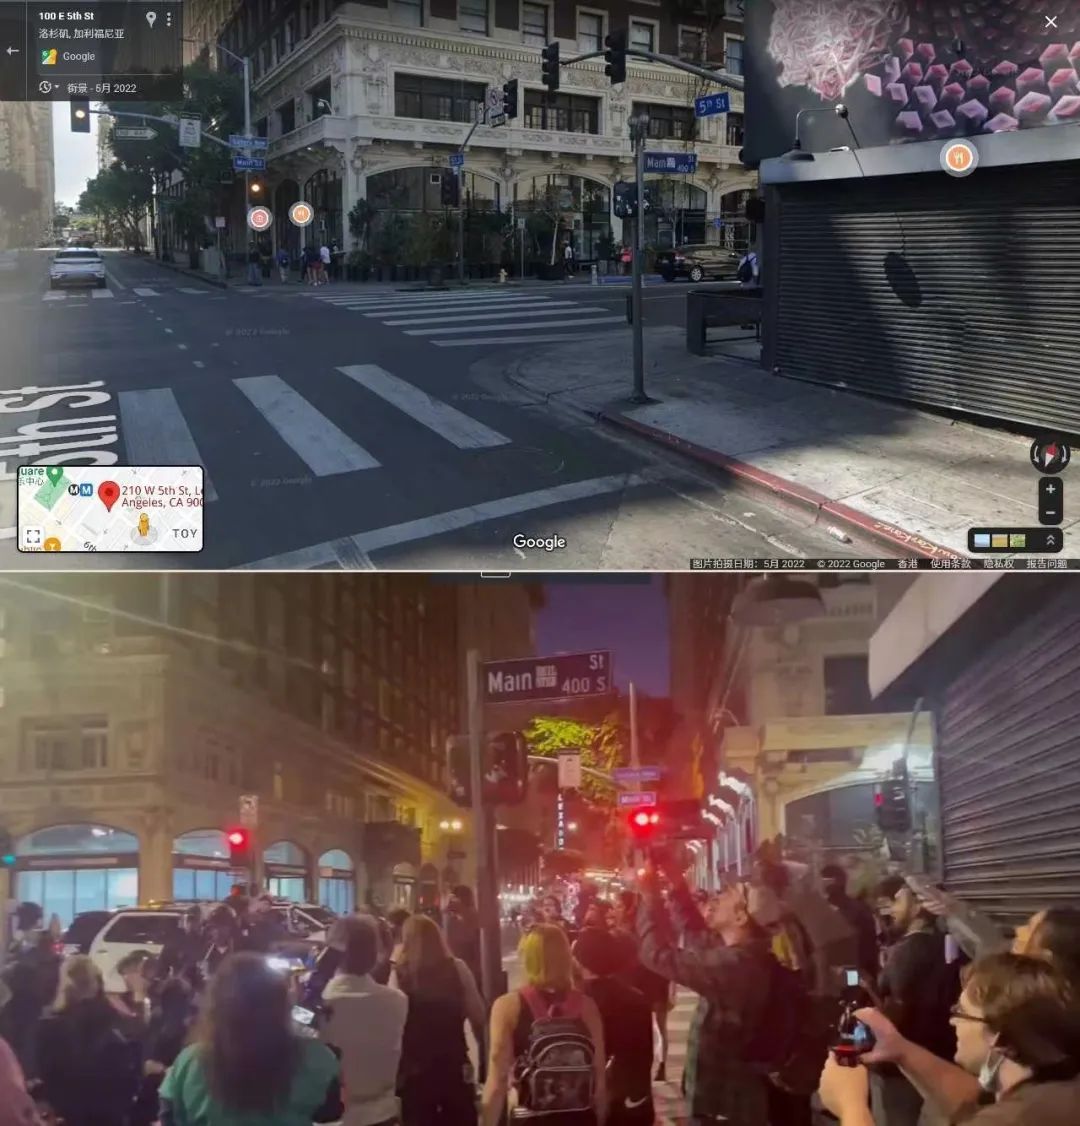 谷歌街景与视频内容比对，可见同样的写有400 S Main St的路牌。  